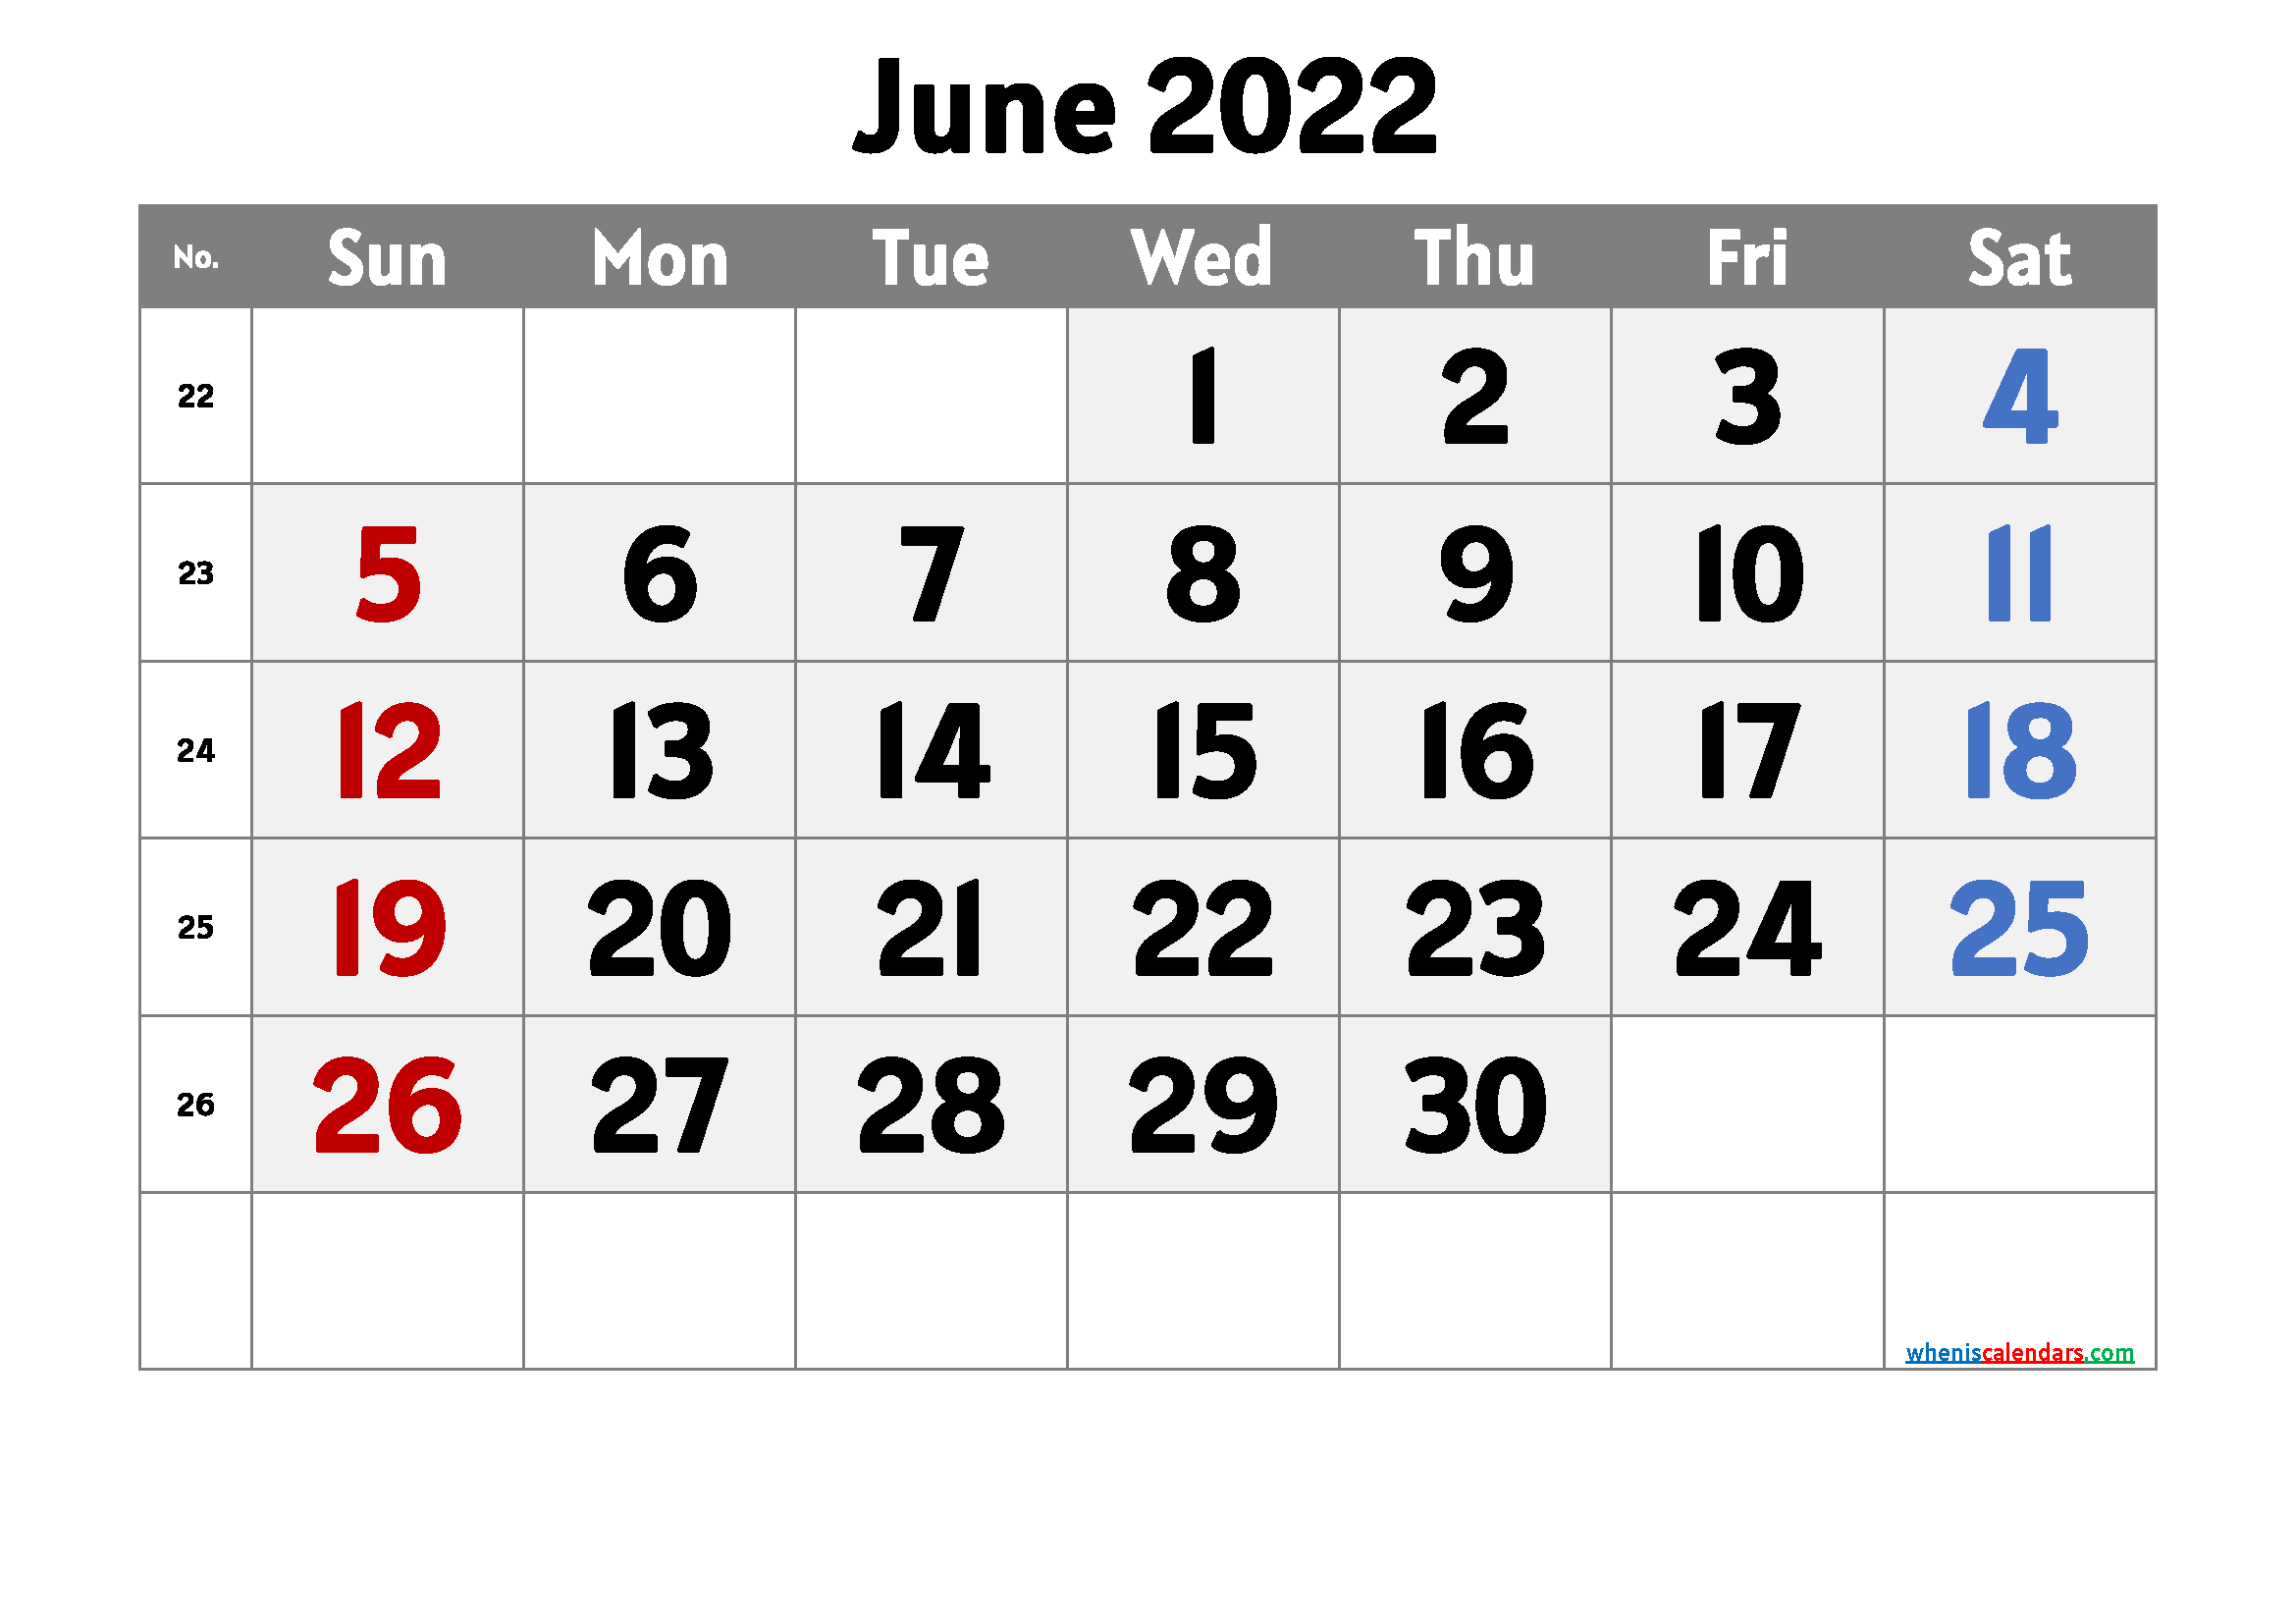 Cute June 2022 Calendar